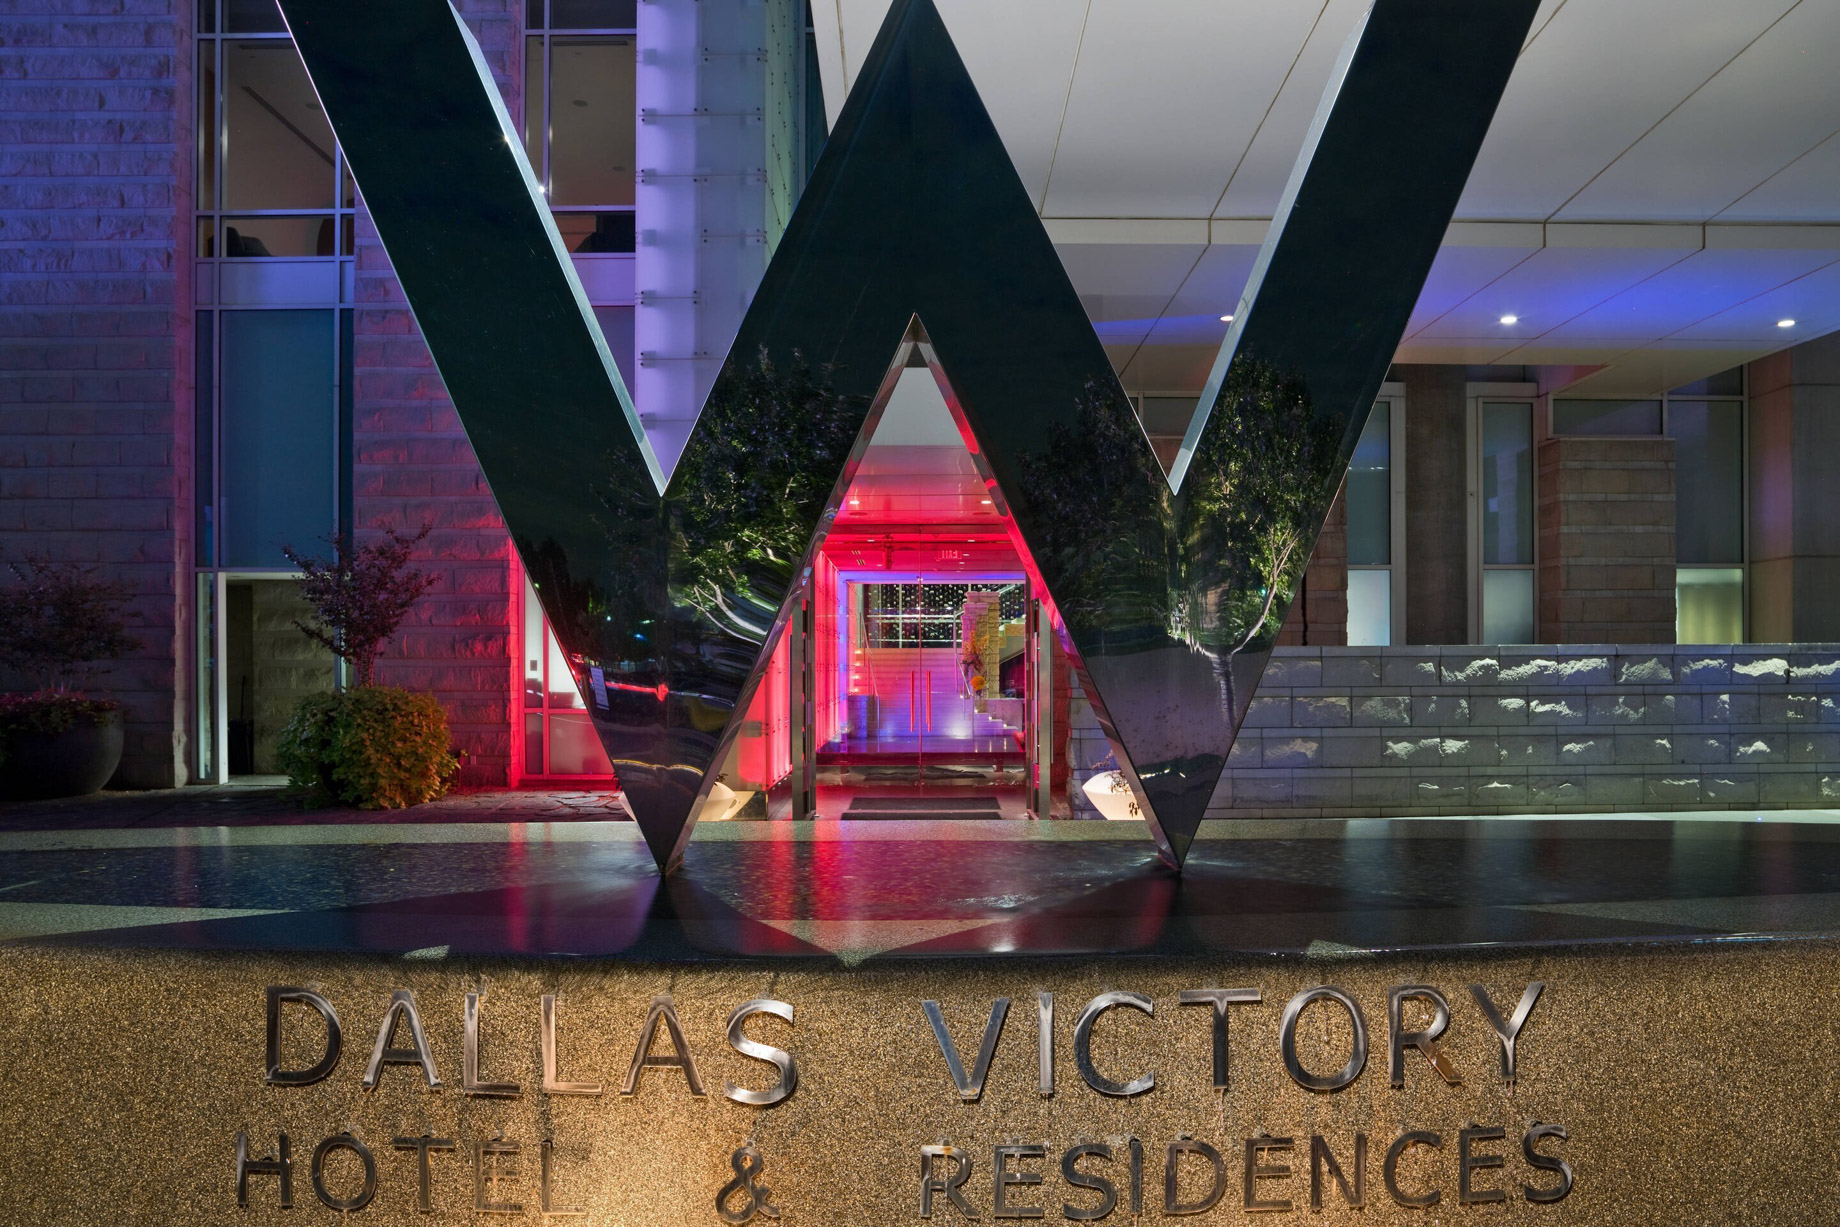 W Dallas Victory Hotel – Dallas, TX, USA – Hotel W Sign Night